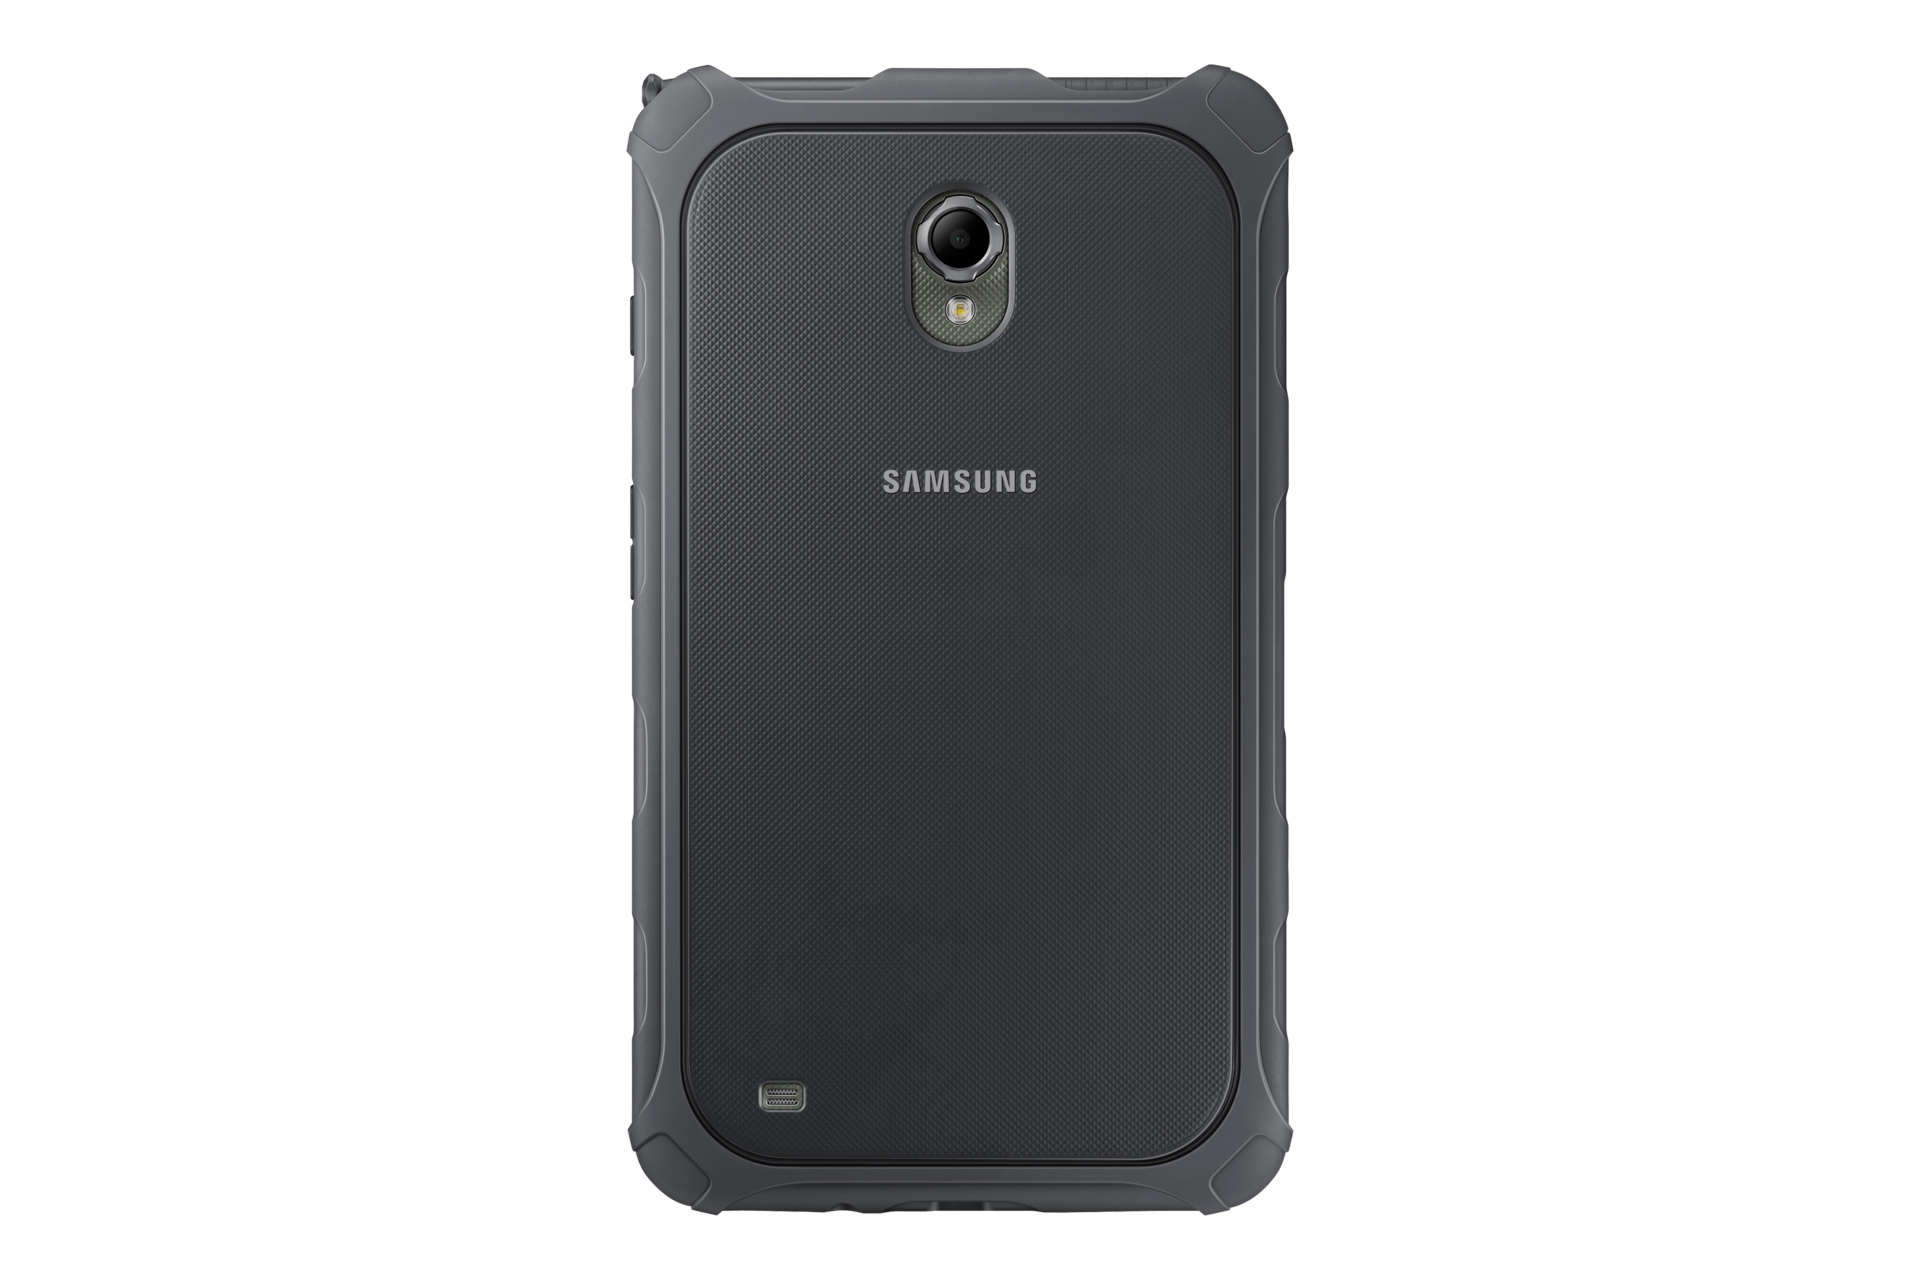 Samsung galaxy active 3